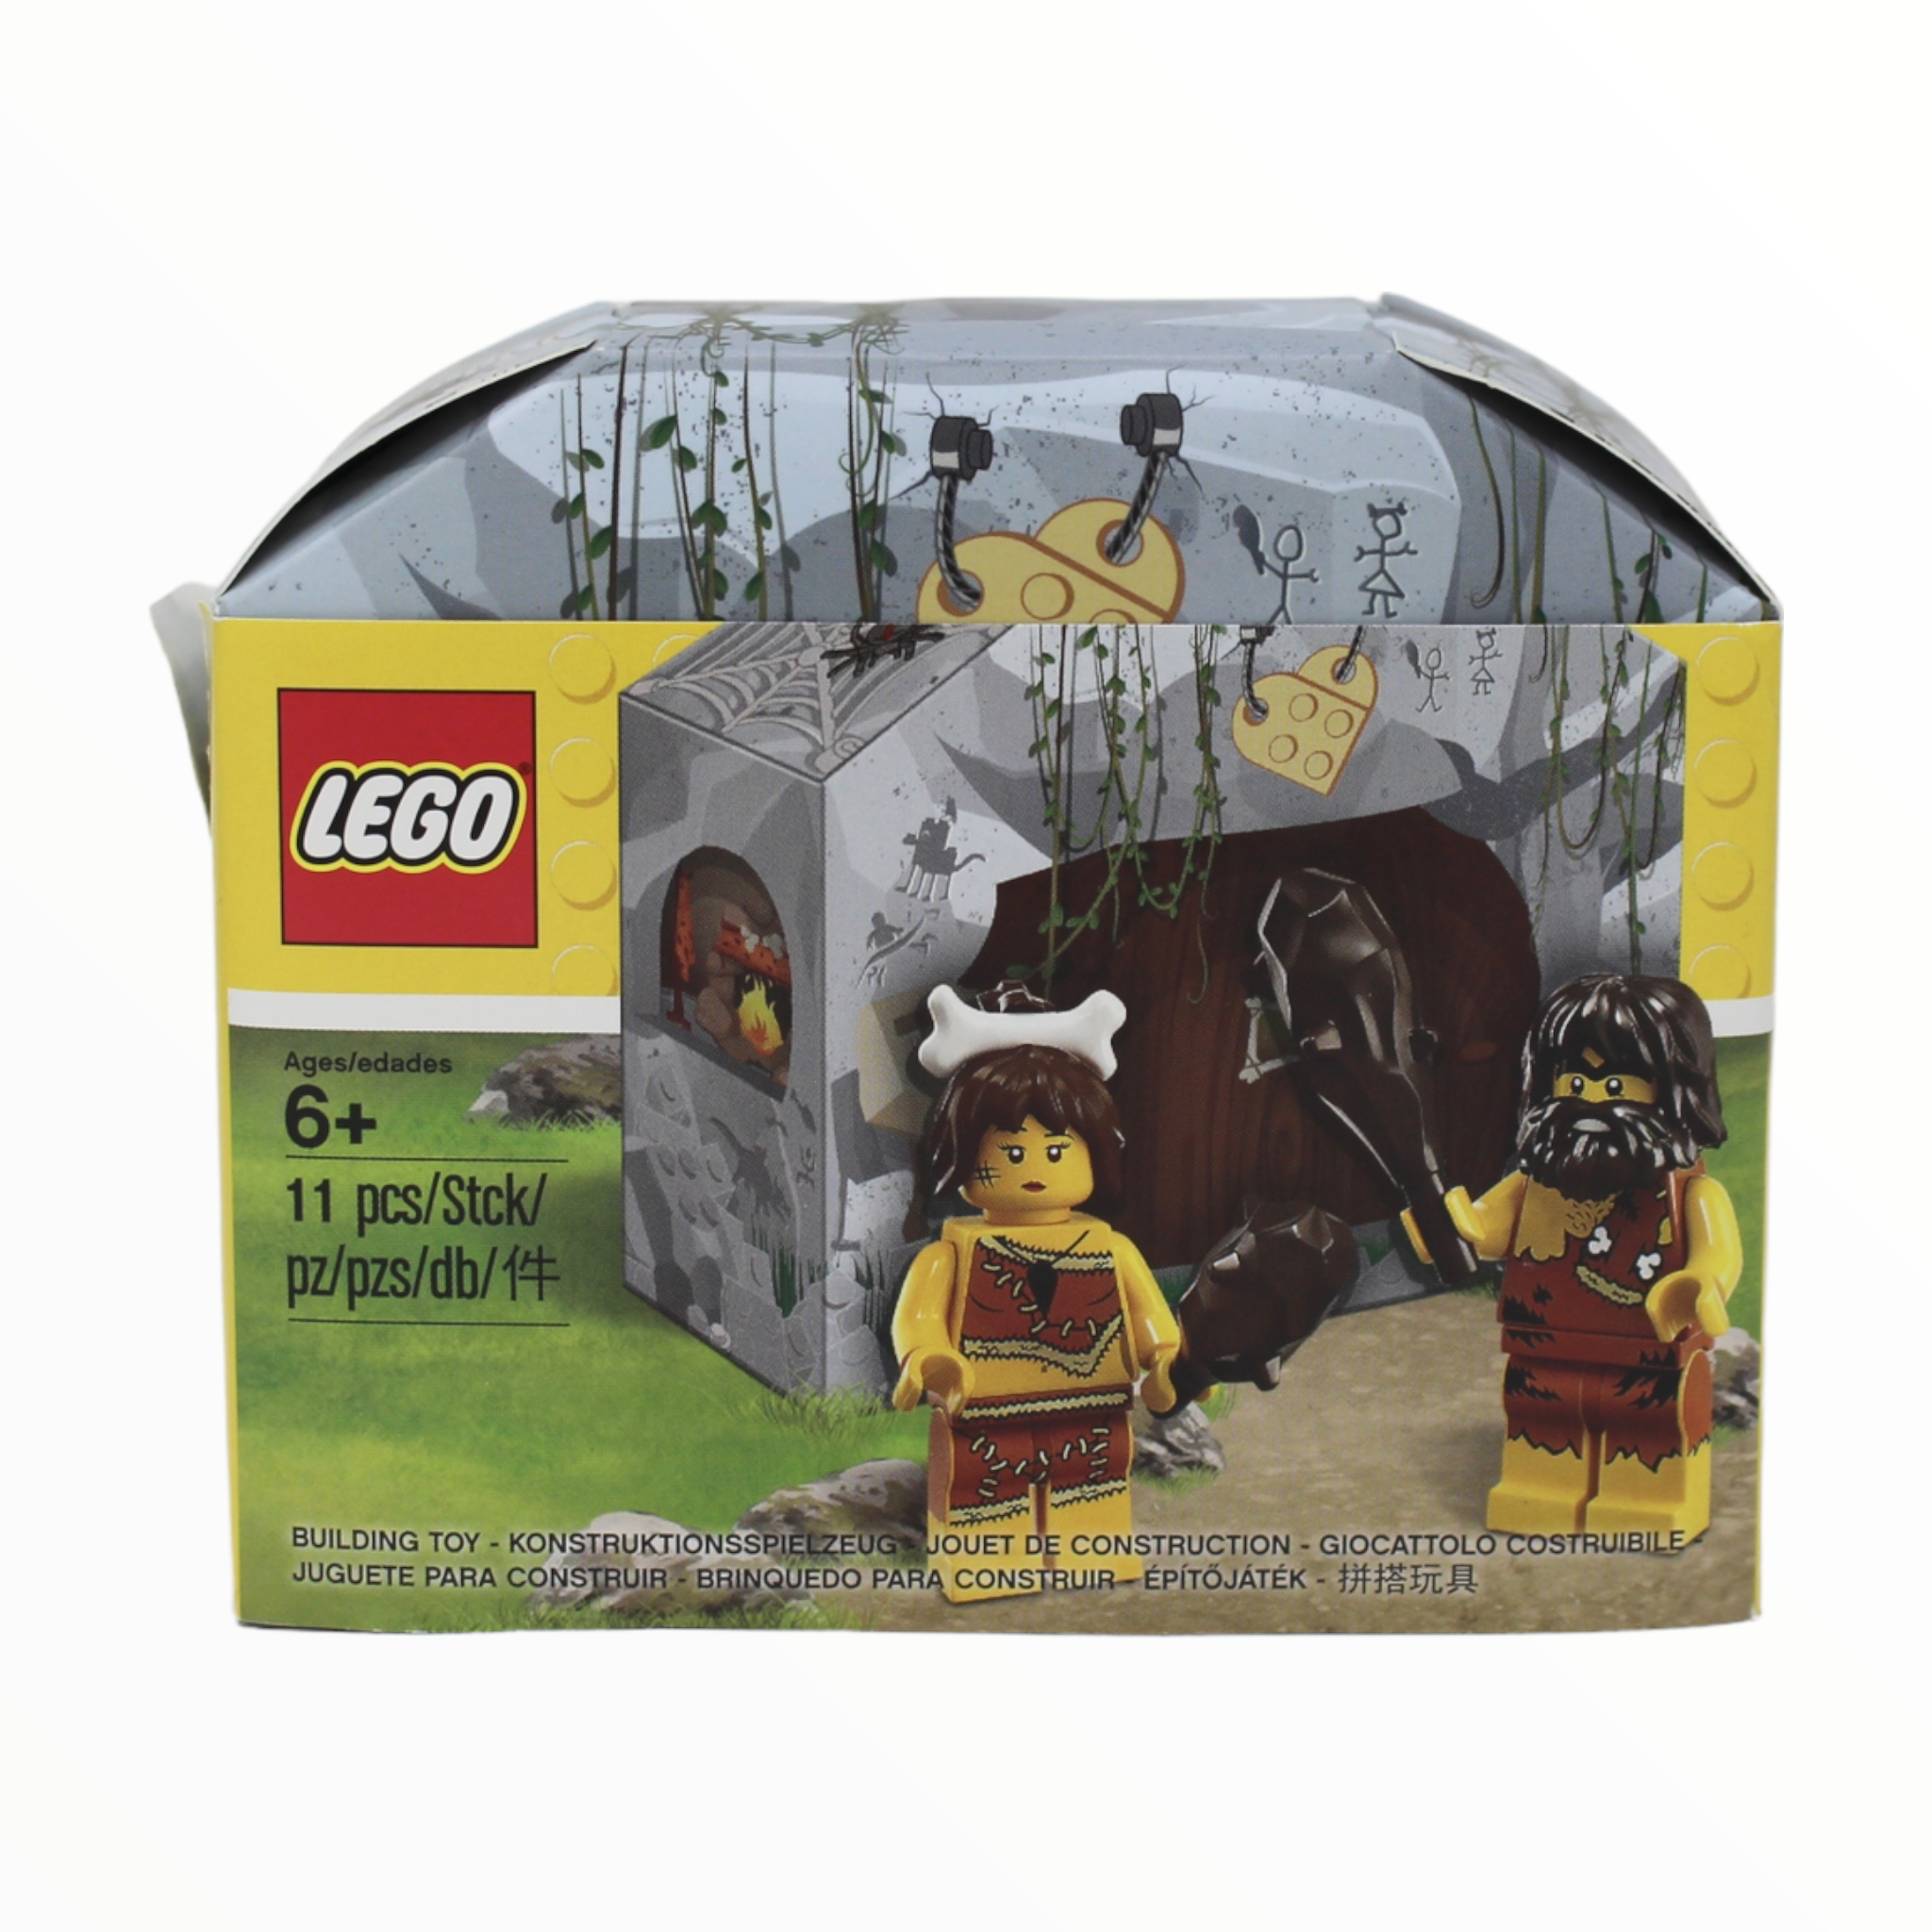 Retired Set 5004936 LEGO Iconic Cave